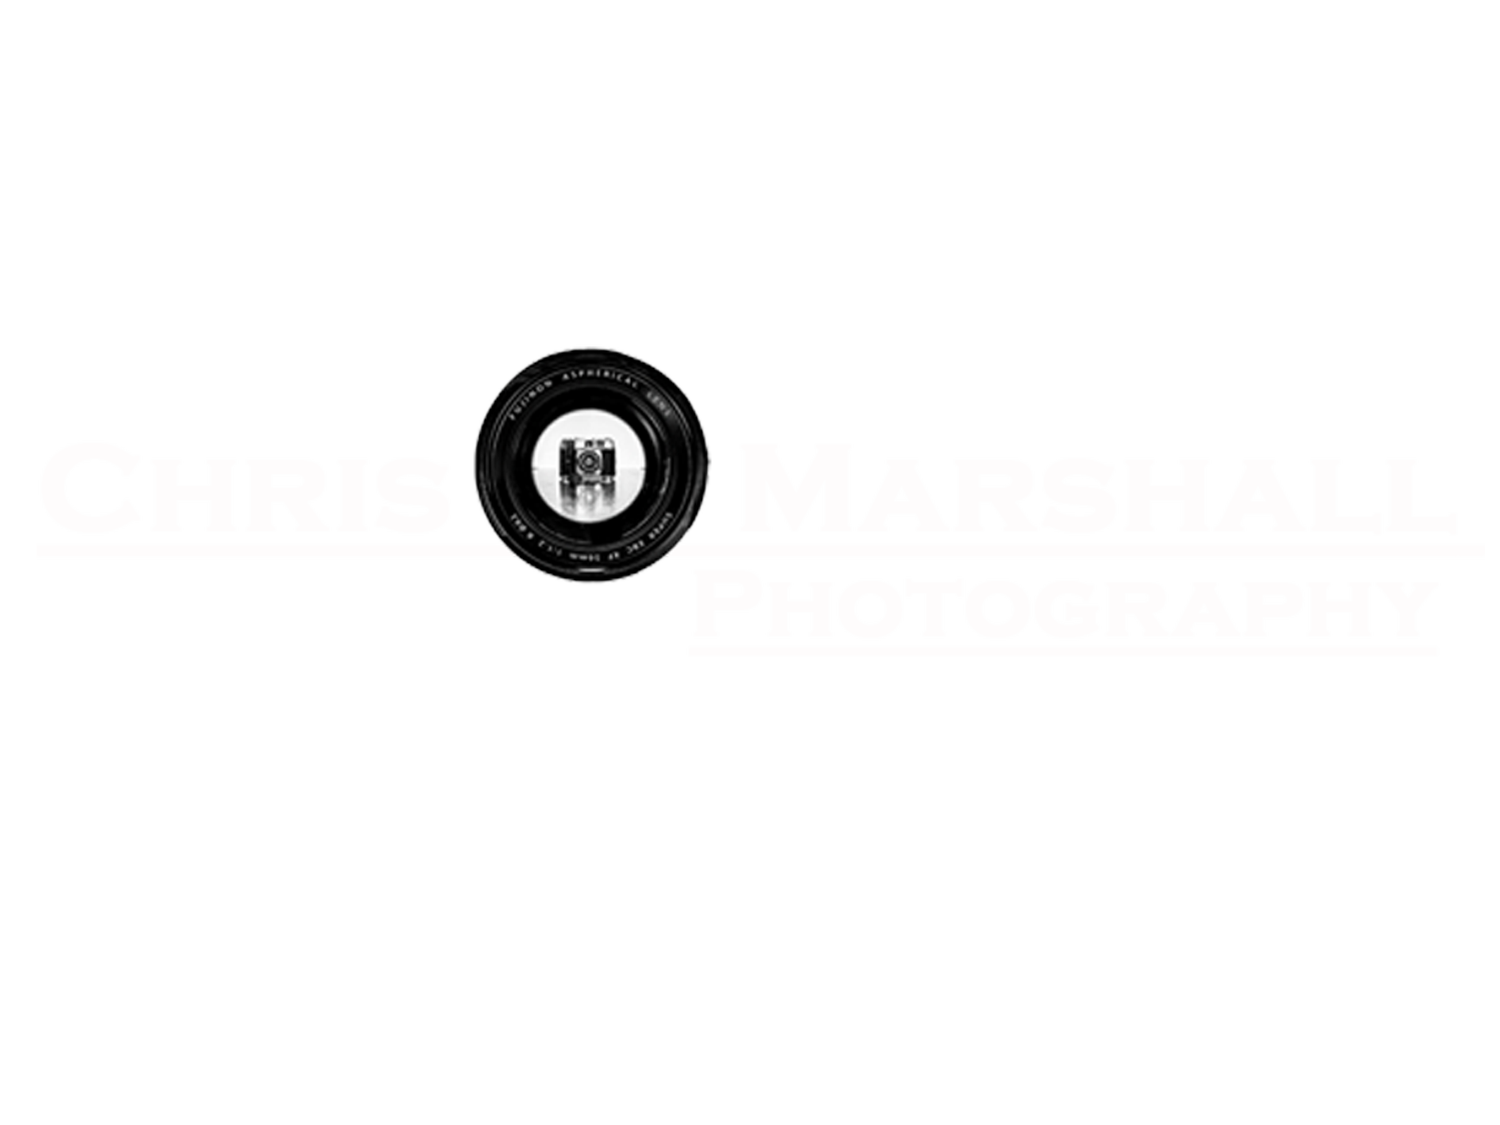 Chris Marshall Photography